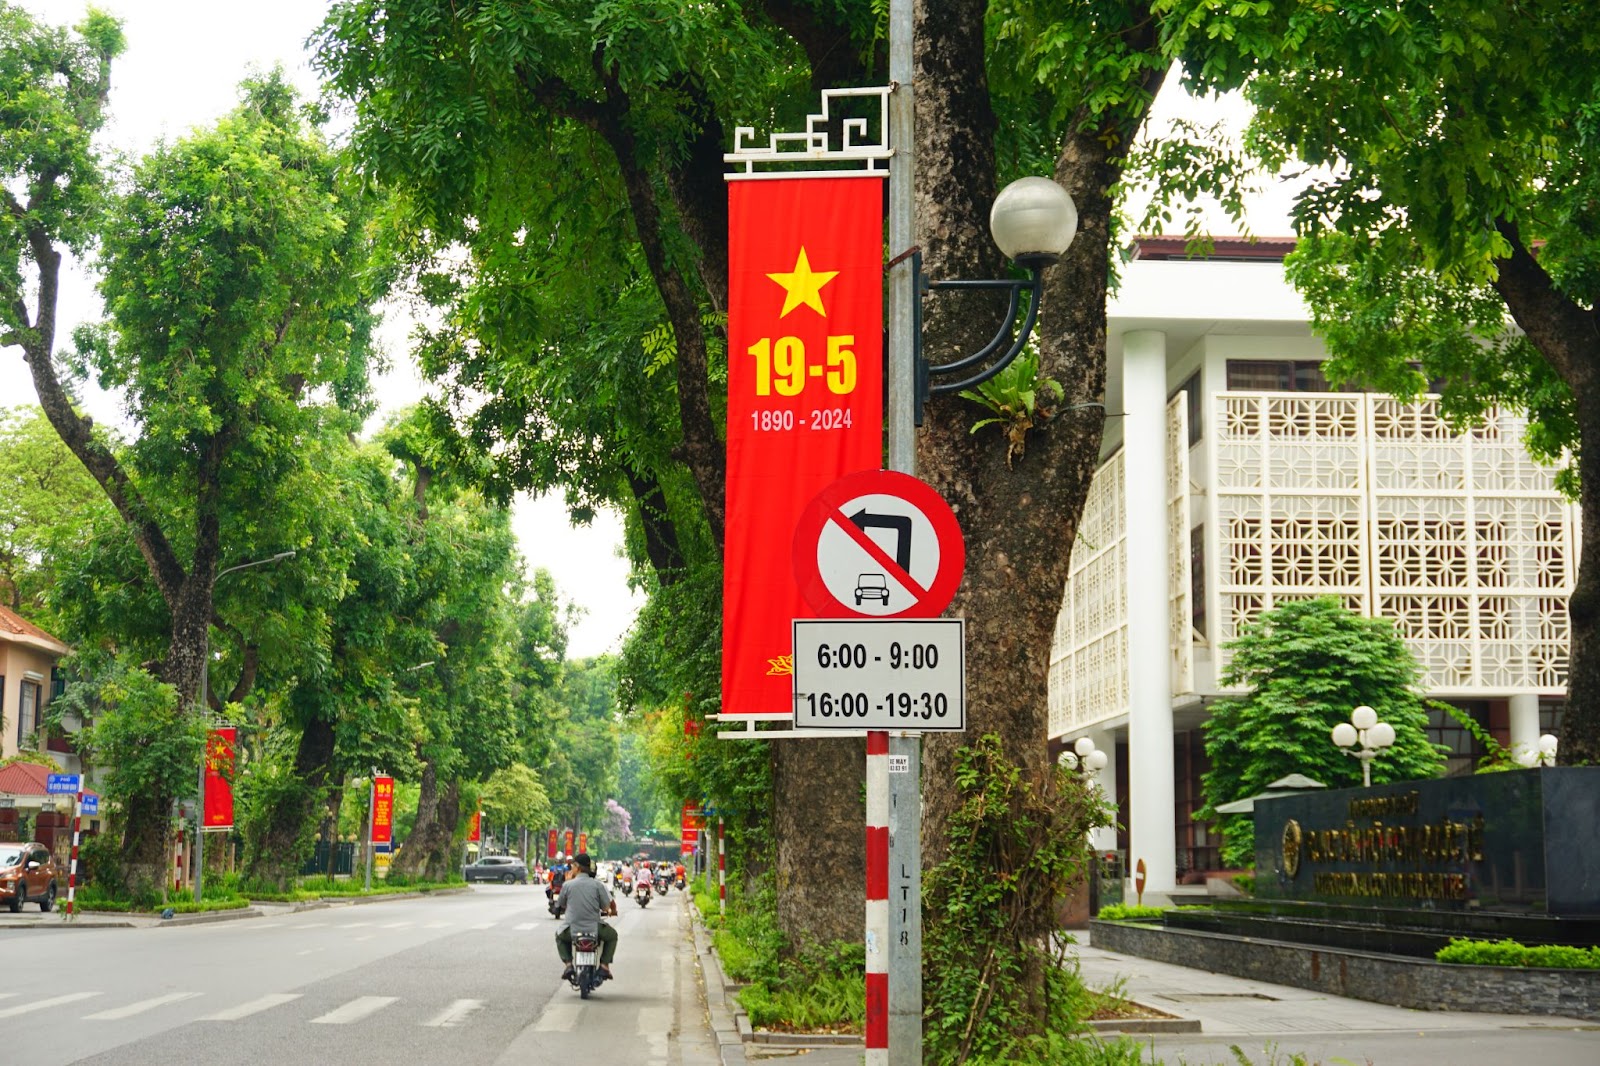 Hà Nội rợp sắc cờ hoa kỷ niệm ngày sinh Chủ tịch Hồ Chí Minh - Ảnh 2.